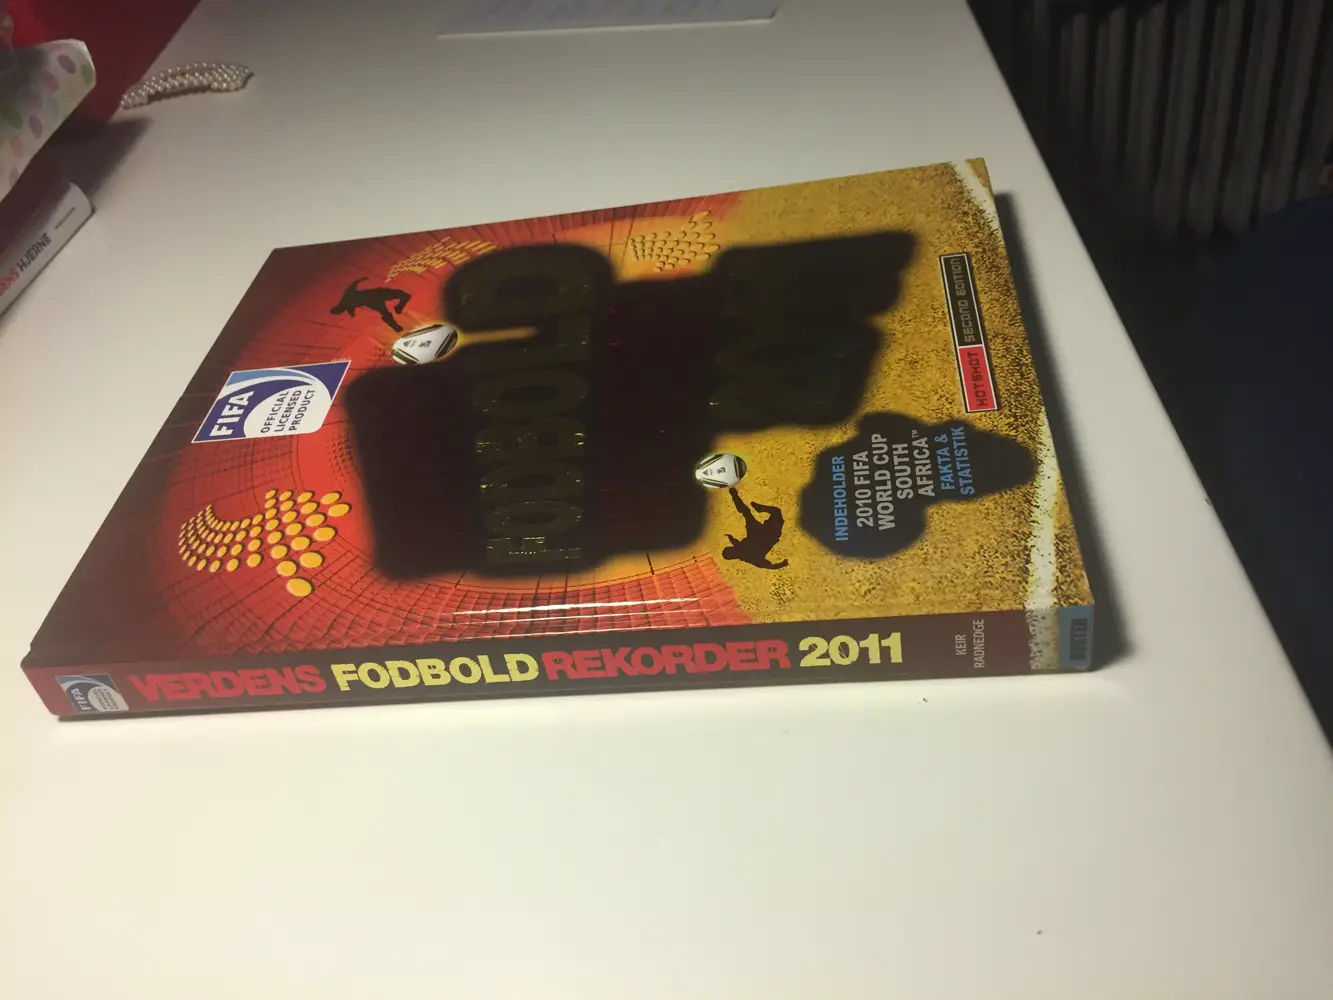 Verdens Fodbold Rekorder 2011 bog